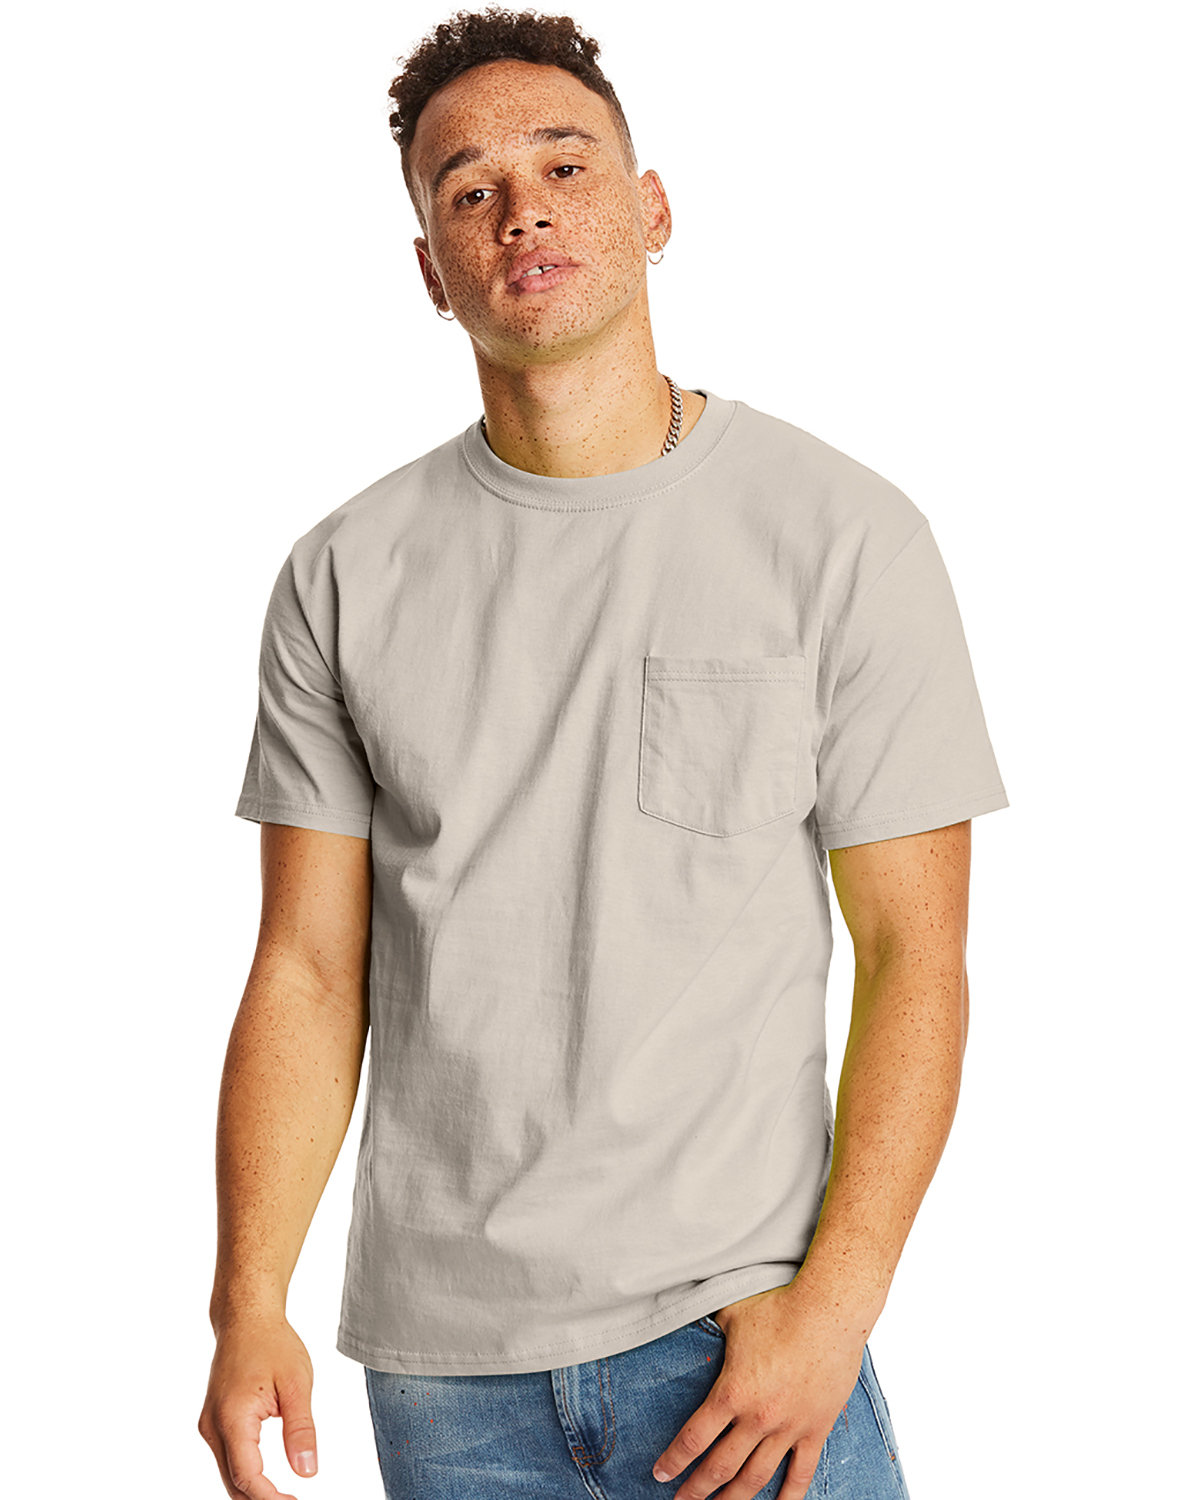 Hanes Men's Authentic-T Pocket T-Shirt sand 